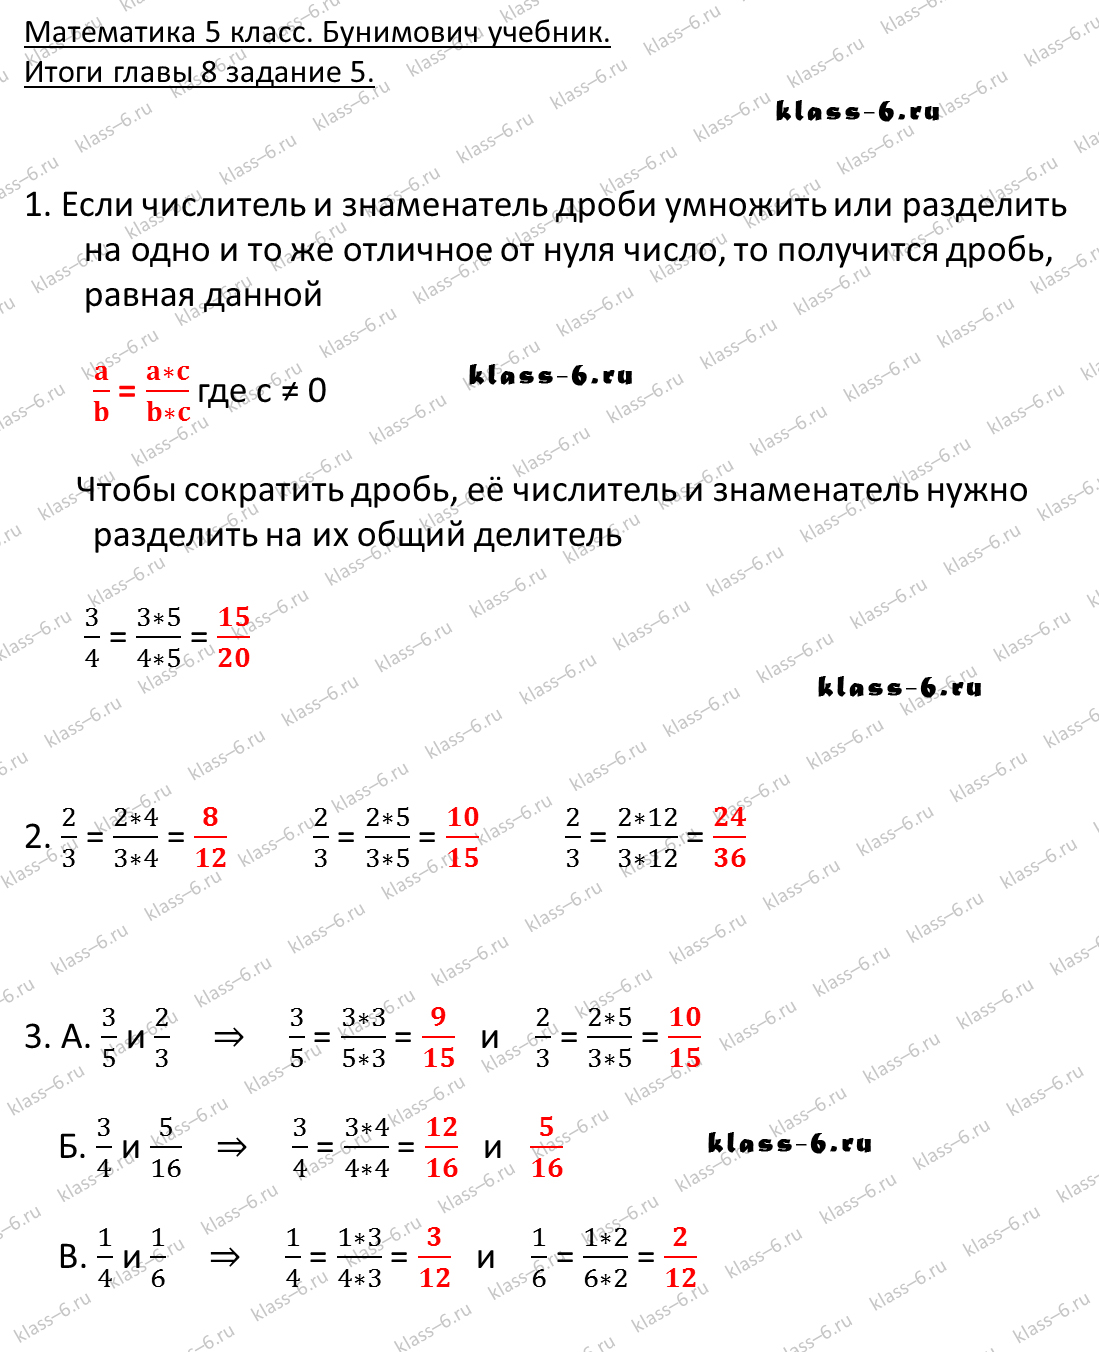 решебник и гдз по математике учебник Бунимович 5 класс итоги главы 8-5